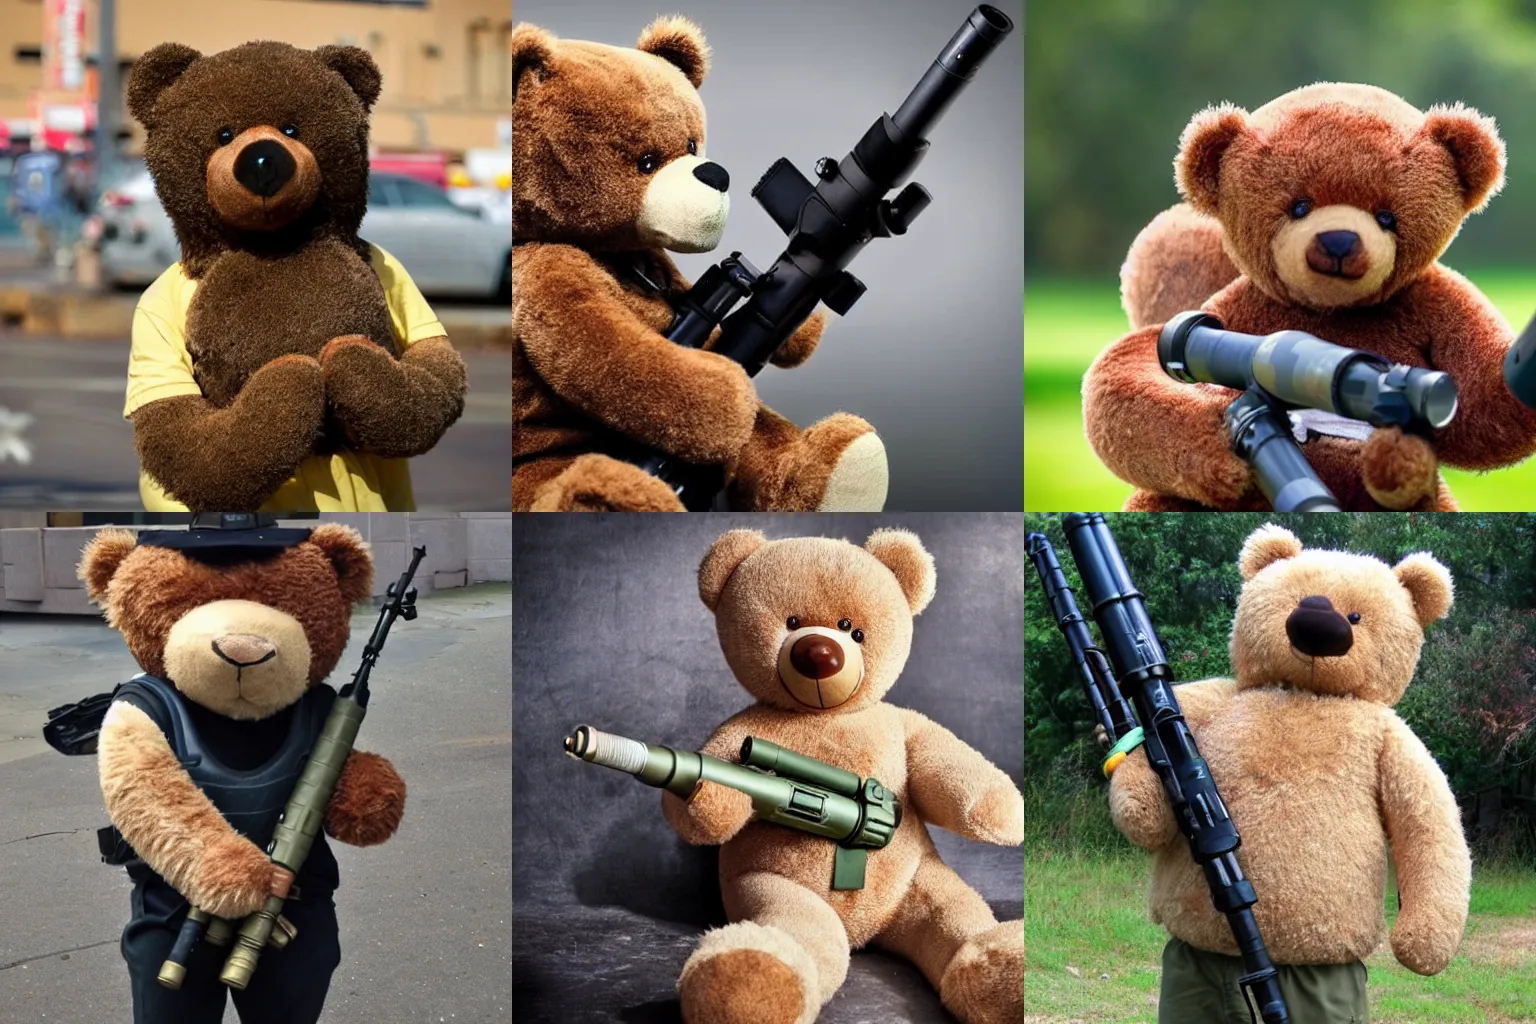 Prompt: A teddy bear holding a bazooka